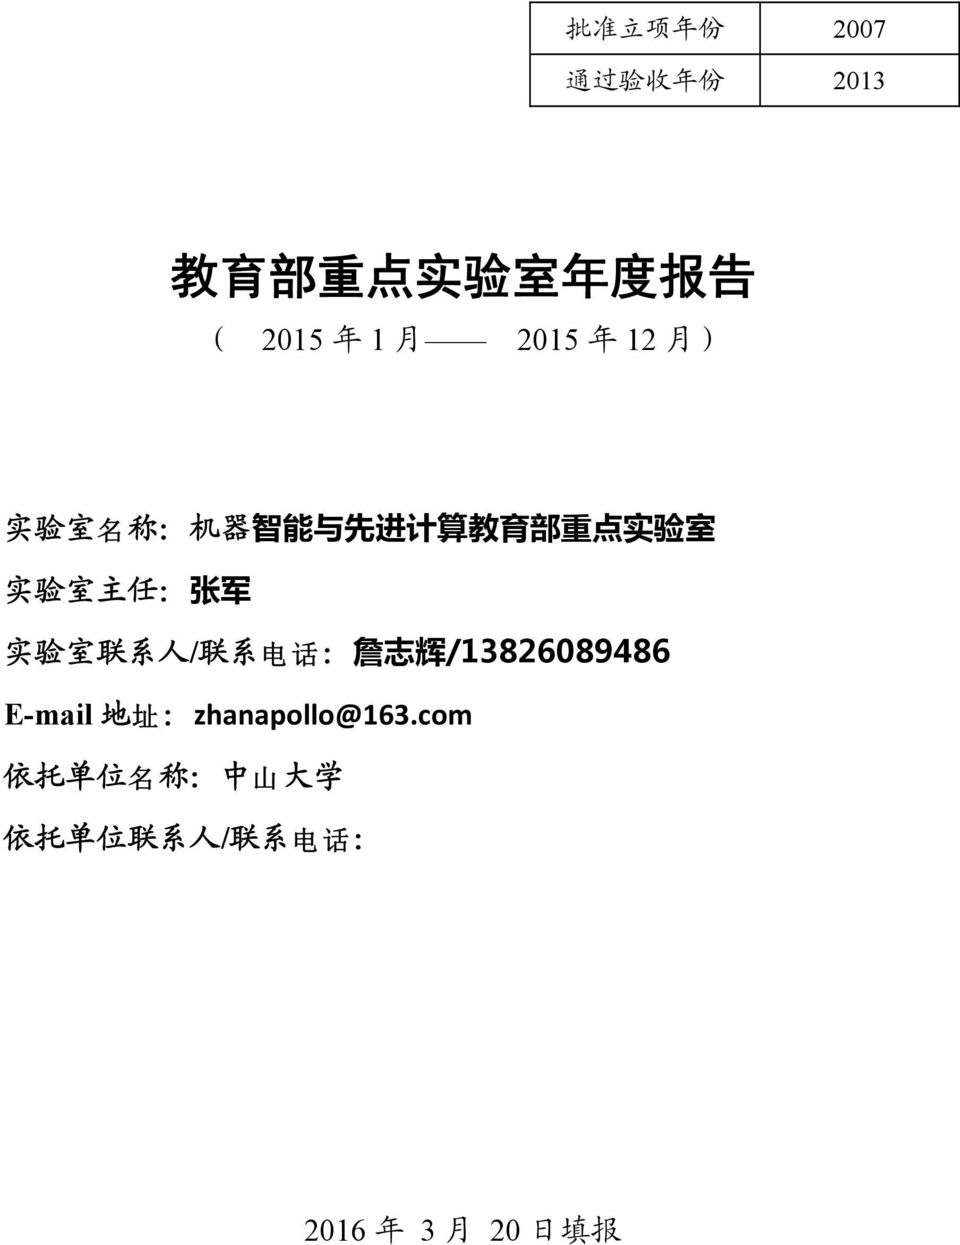 张 军 实 验 室 联 系 人 / 联 系 电 电 : 詹 志 辉 /13826089486 E-mail 地 址